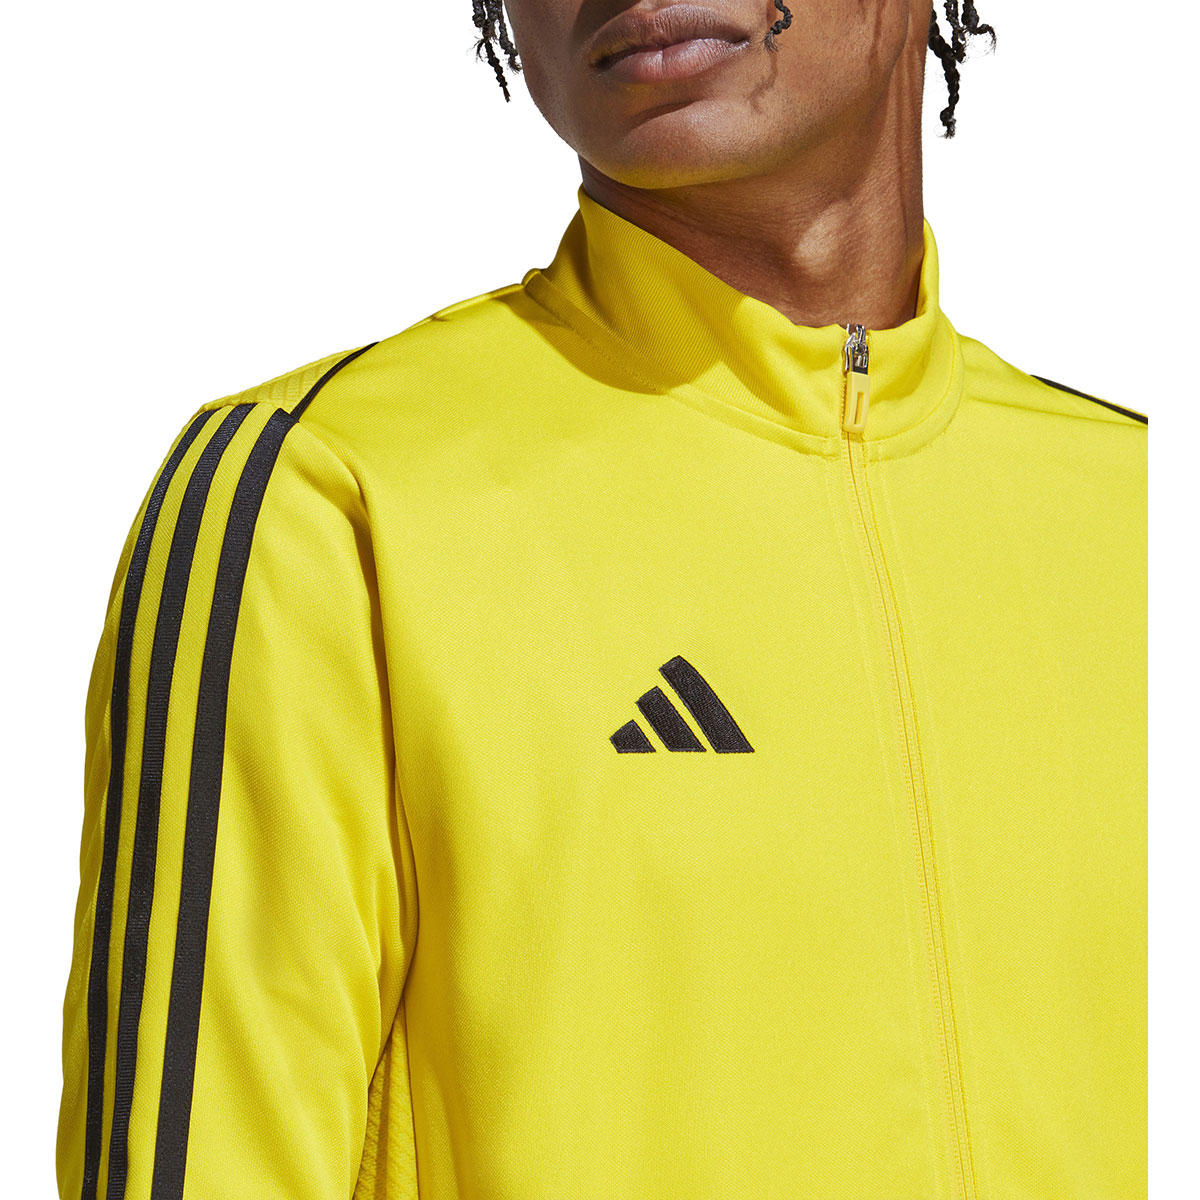 Adidas Herren Trainingsjacke Tiro 23 gelb